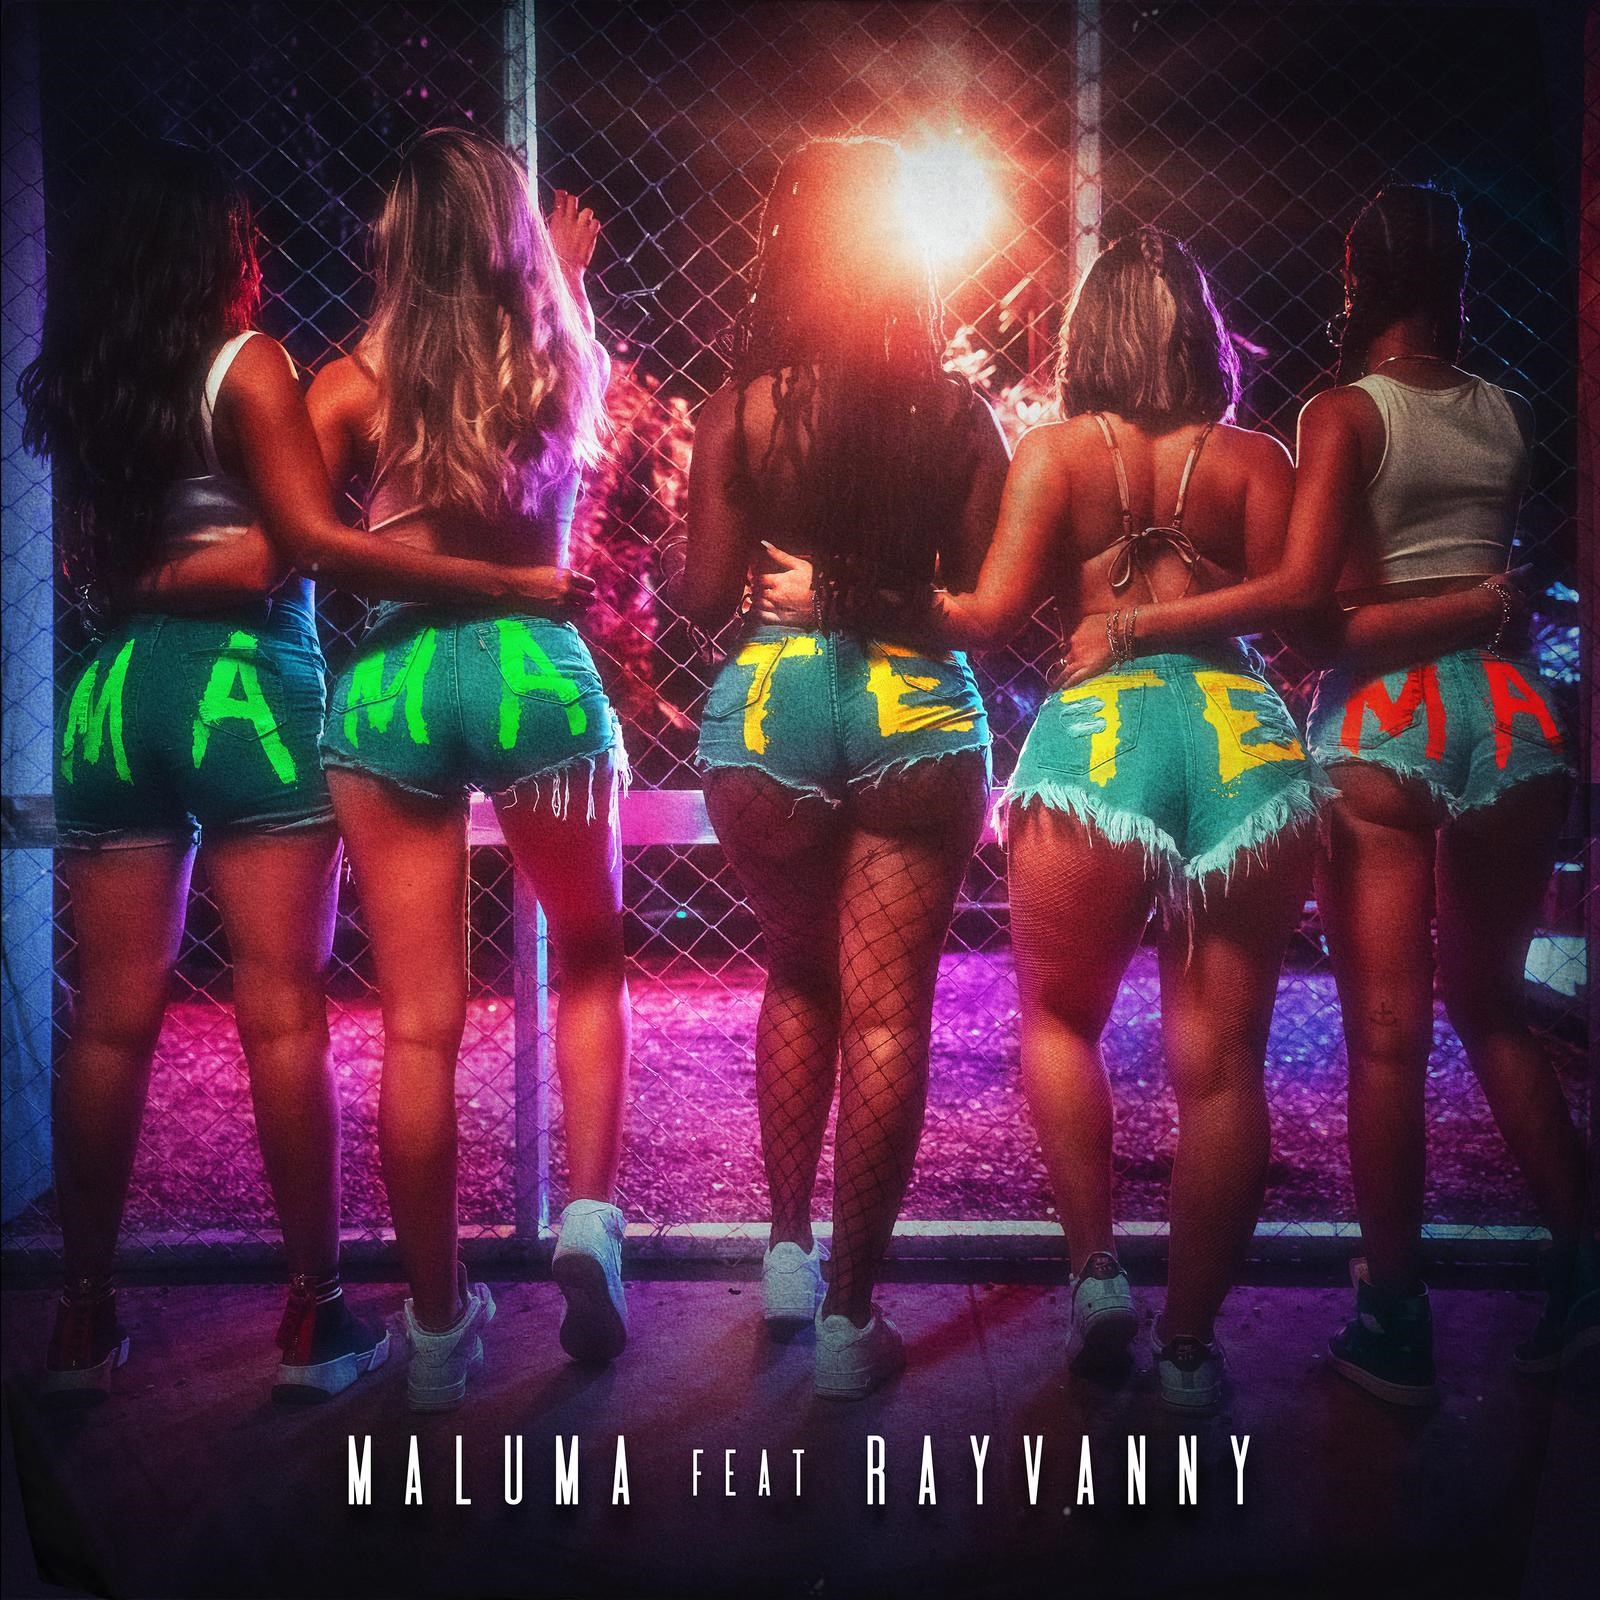 MALUMA lanza su nuevo sencillo y video «MAMA TETEMA» Feat Rayvanny